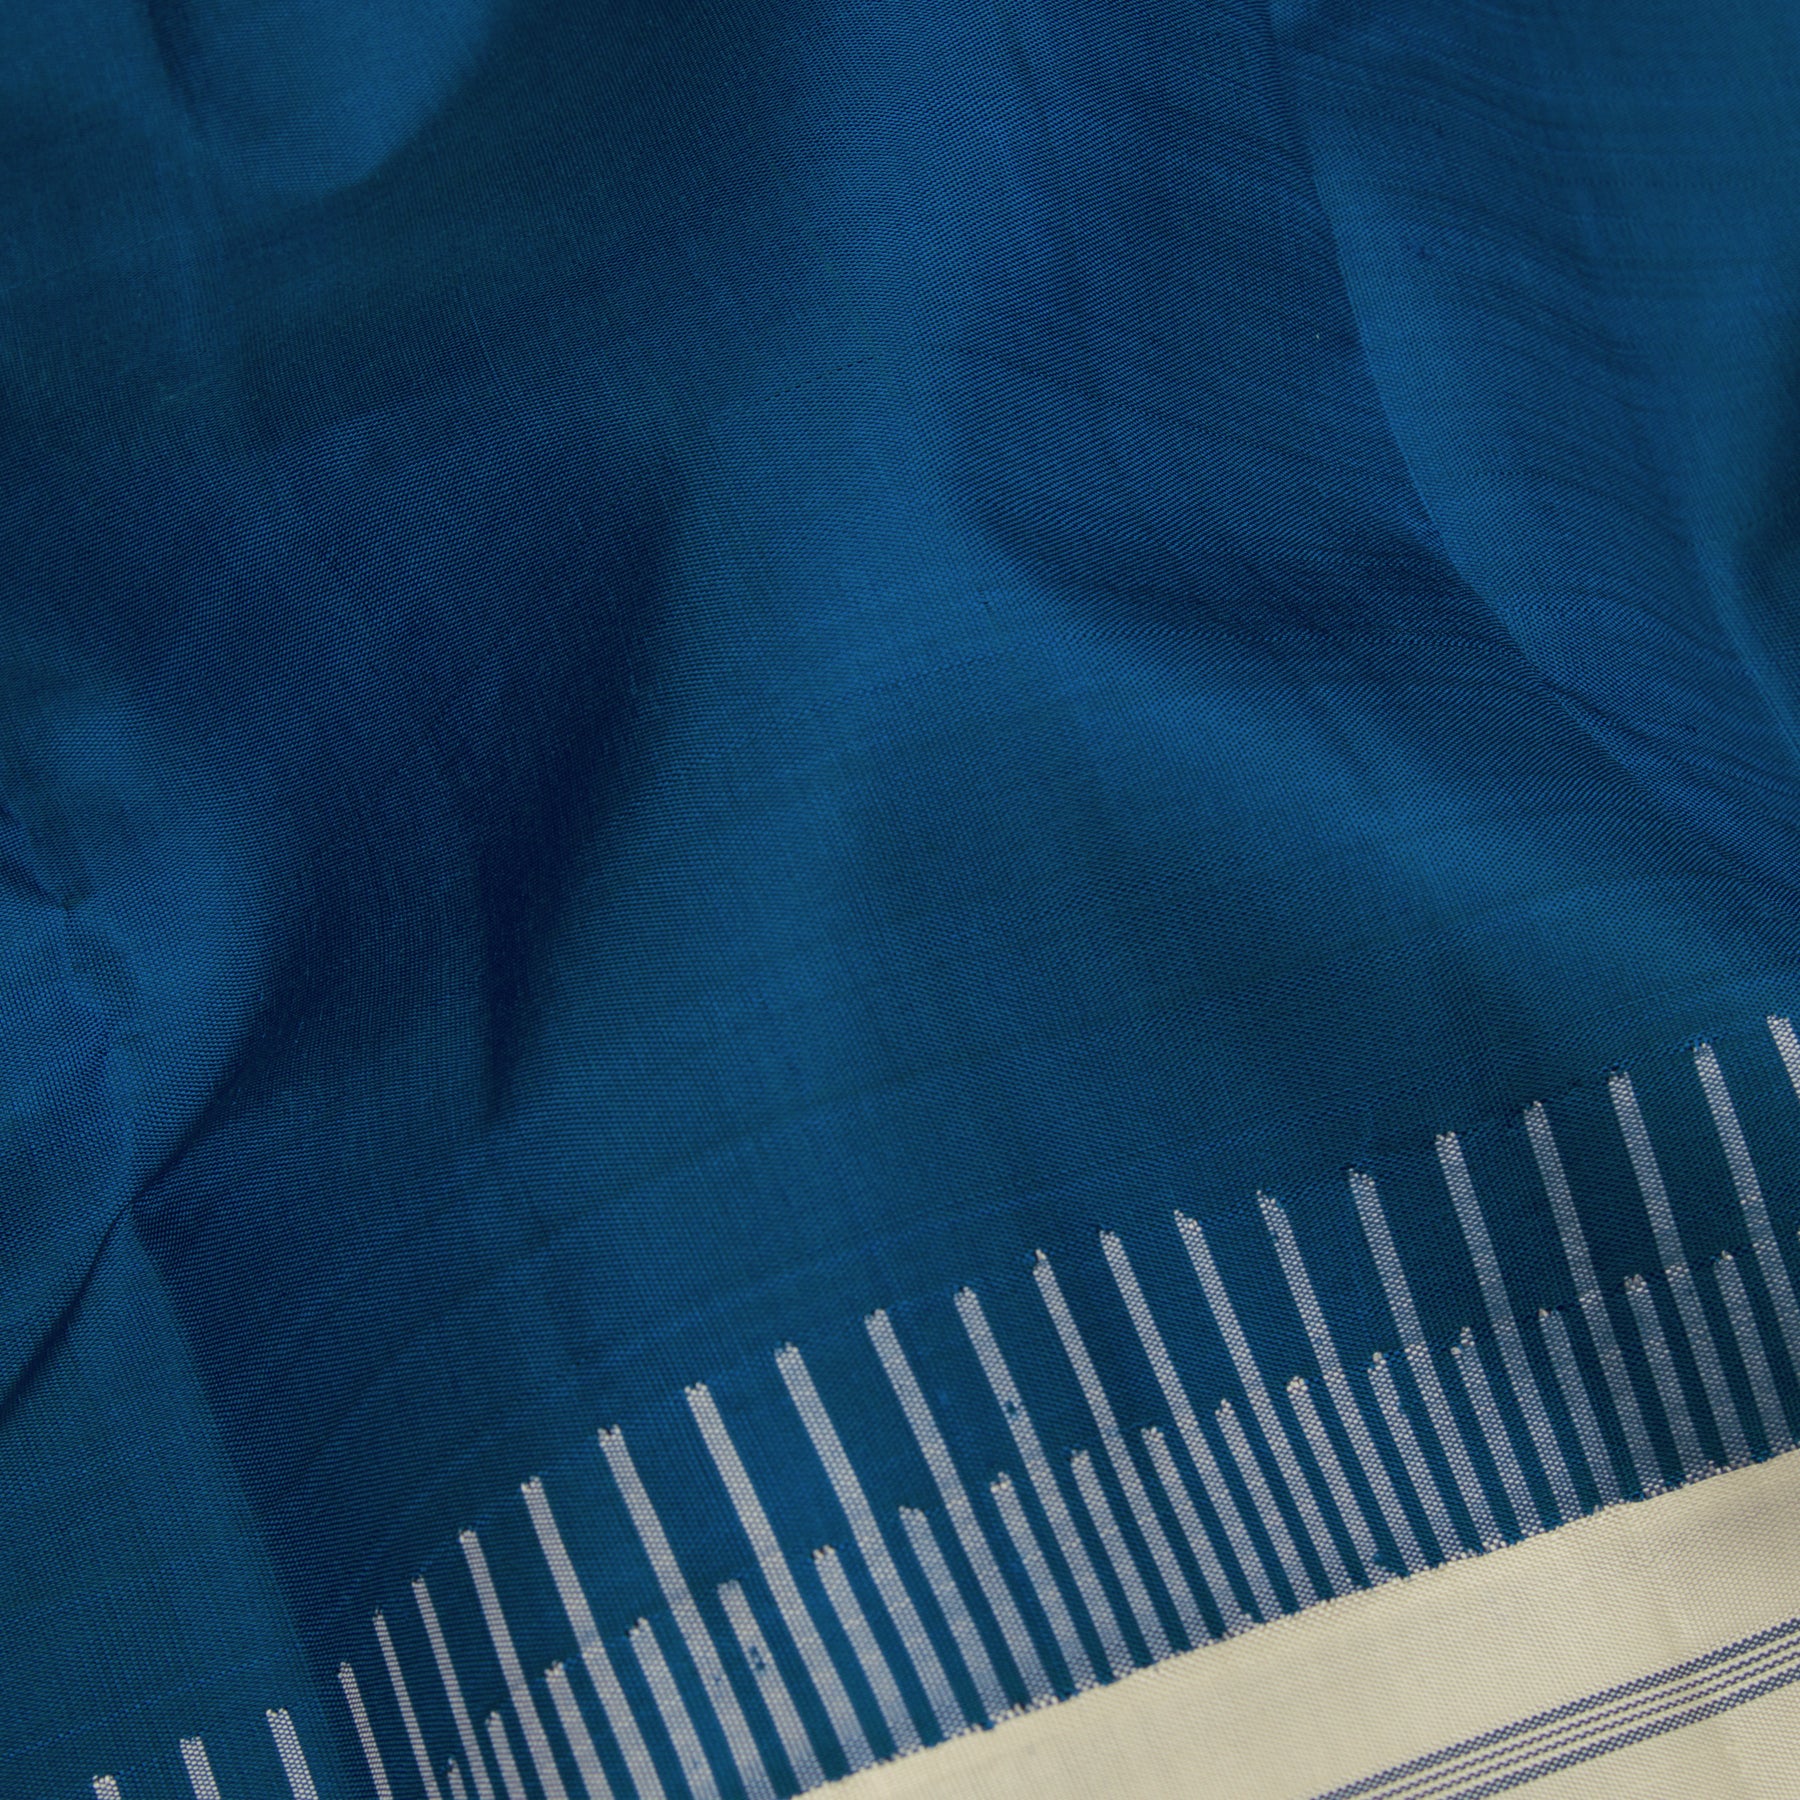 Kanakavalli Kanjivaram Silk Sari 23-599-HS001-03942 - Fabric View